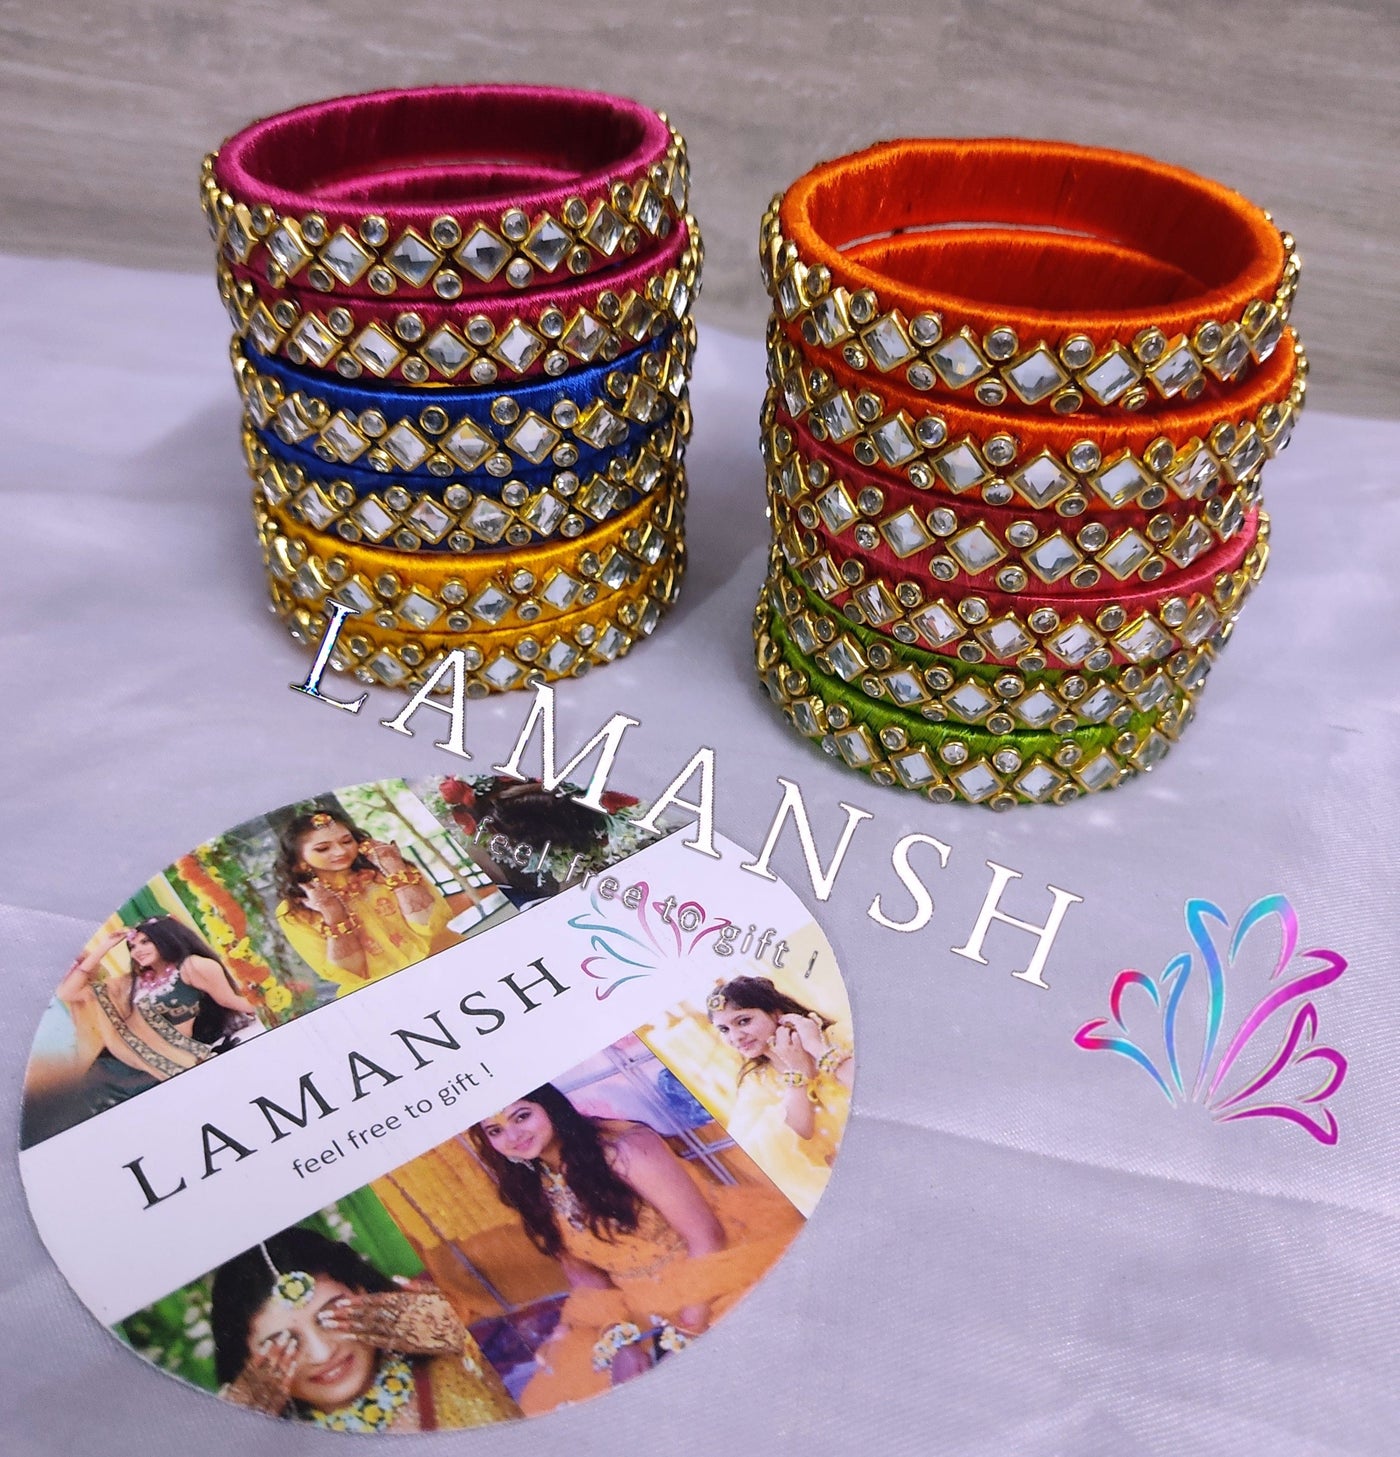 Lamansh kundan thread bangles LAMANSH® Pack of 5 pairs Kundan Indian Thread Bangles in Assorted colors / 15mm Broad Kada Bangle For Festival Wear